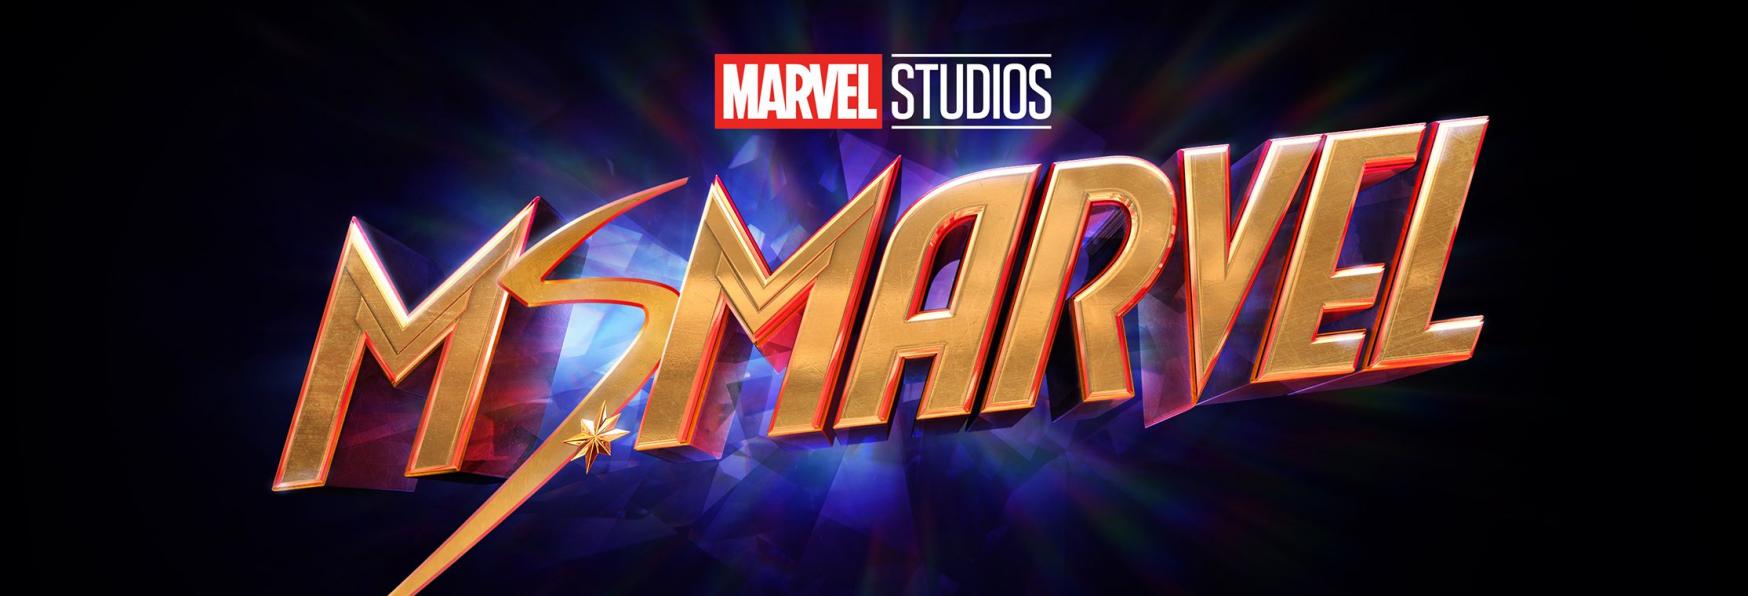 Ms. Marvel: la Data di Uscita e il primo Trailer della Serie TV in arrivo su Disney+